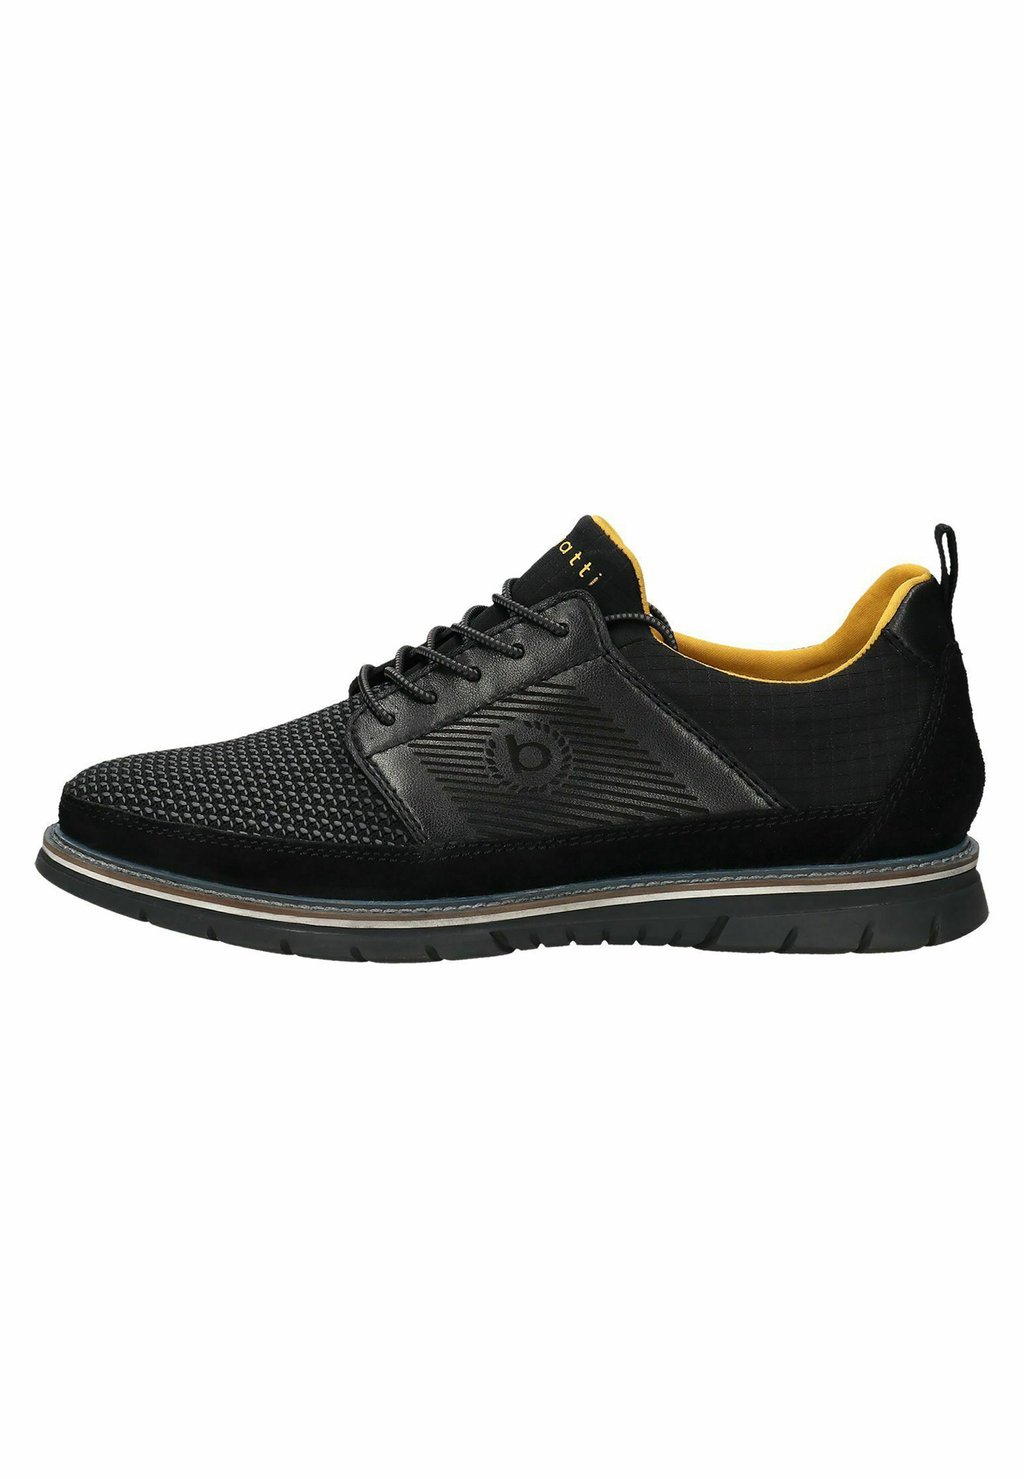 Спортивные туфли на шнуровке SAMMY COMFORT bugatti, цвет schwarz